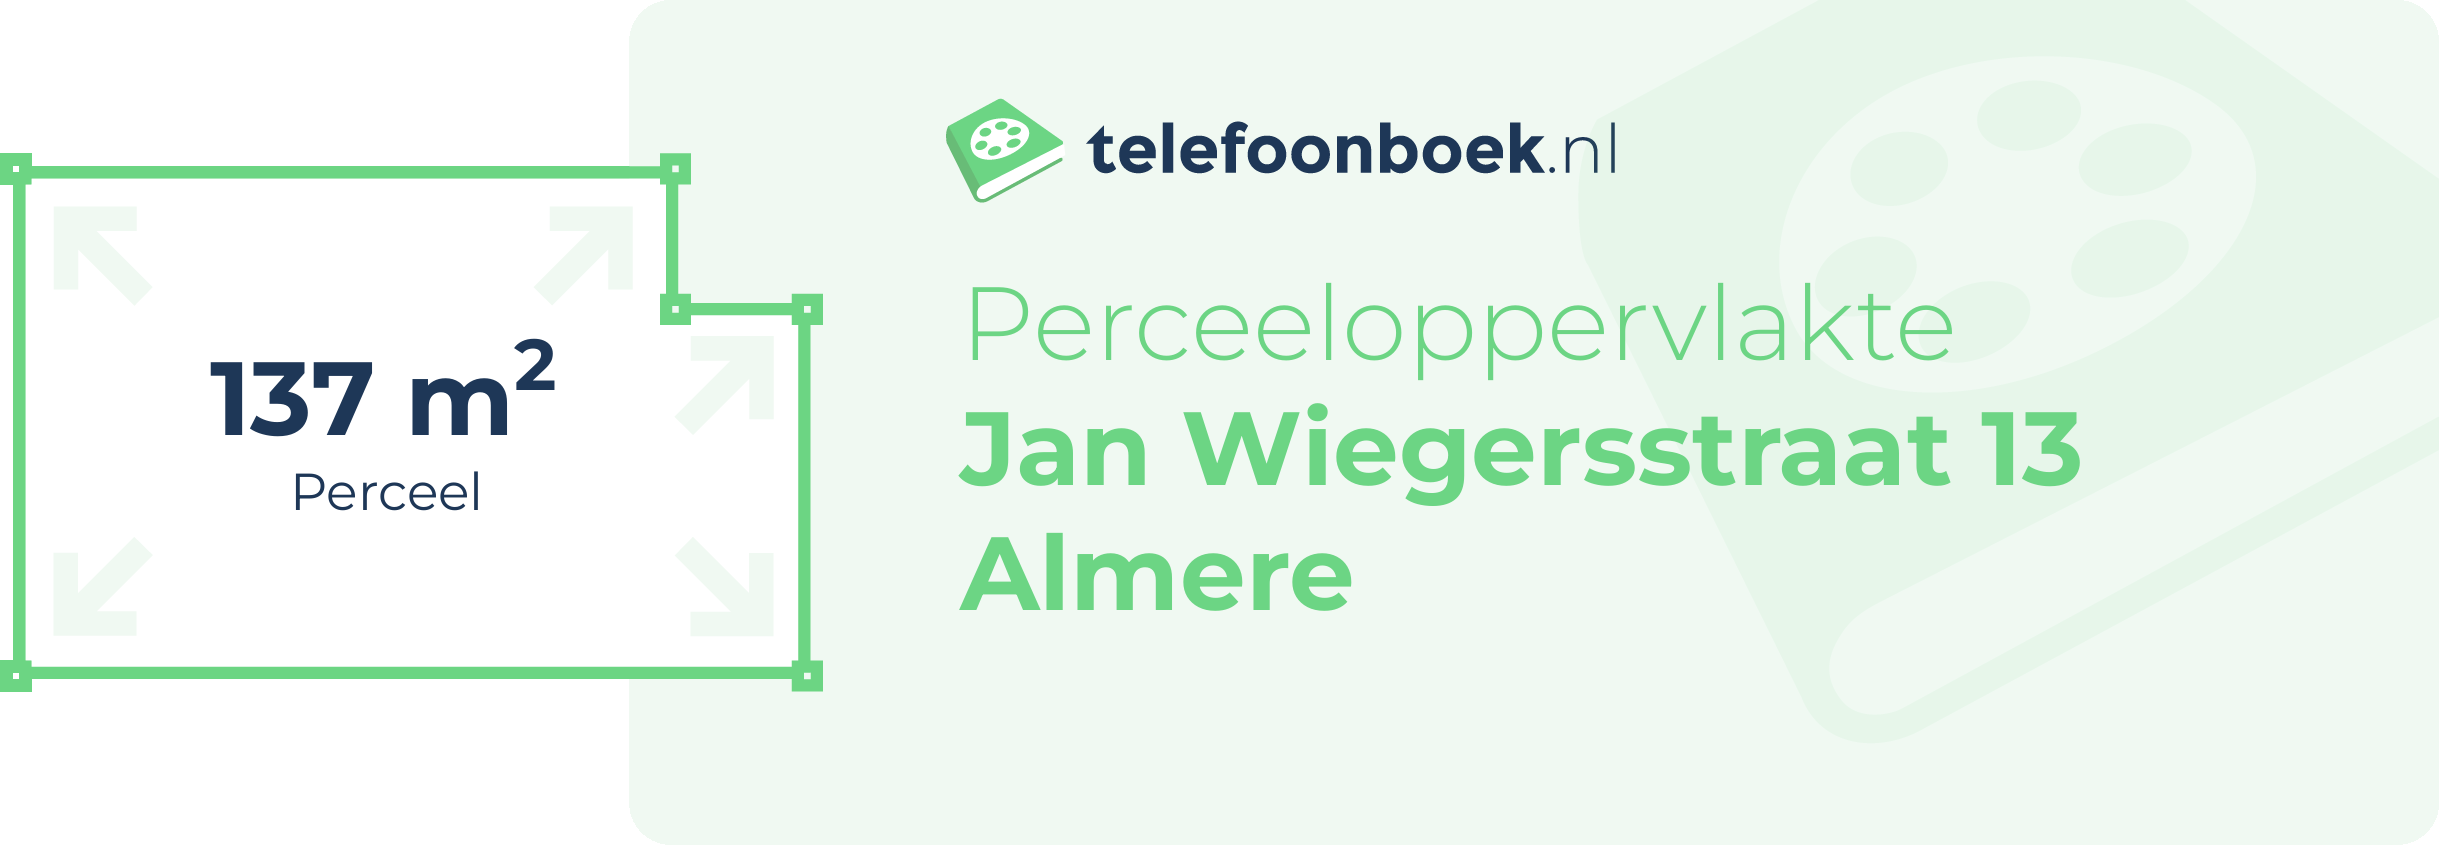 Perceeloppervlakte Jan Wiegersstraat 13 Almere